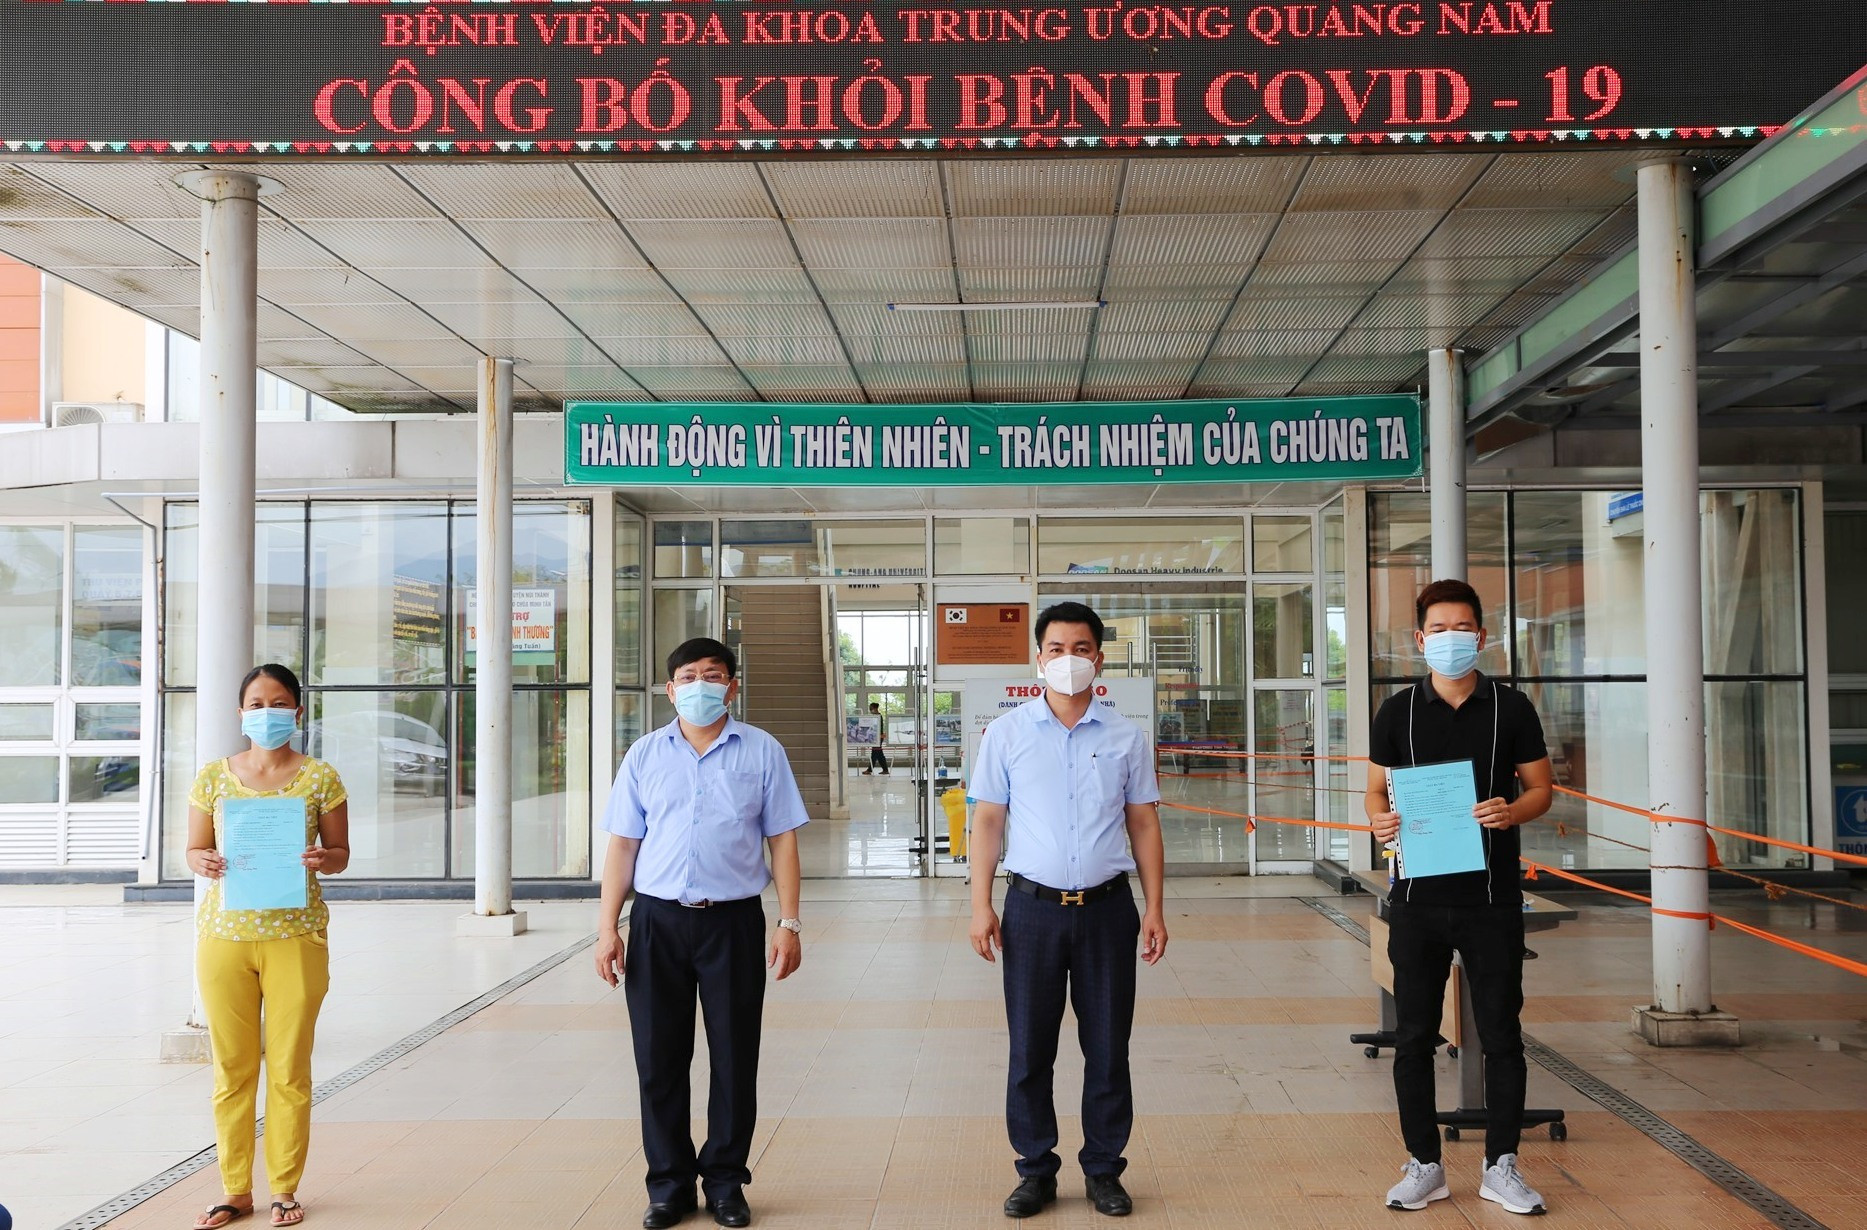 Lãnh đạo Bệnh viện Đa khoa Trung ương Quảng Nam trao giấy xác nhận hoàn thành điều trị Covid-19 và thực hiện các thủ tục xuất viện cho hai bệnh nhân 716, 719. Ảnh: LÊ PHƯƠNG THẢO